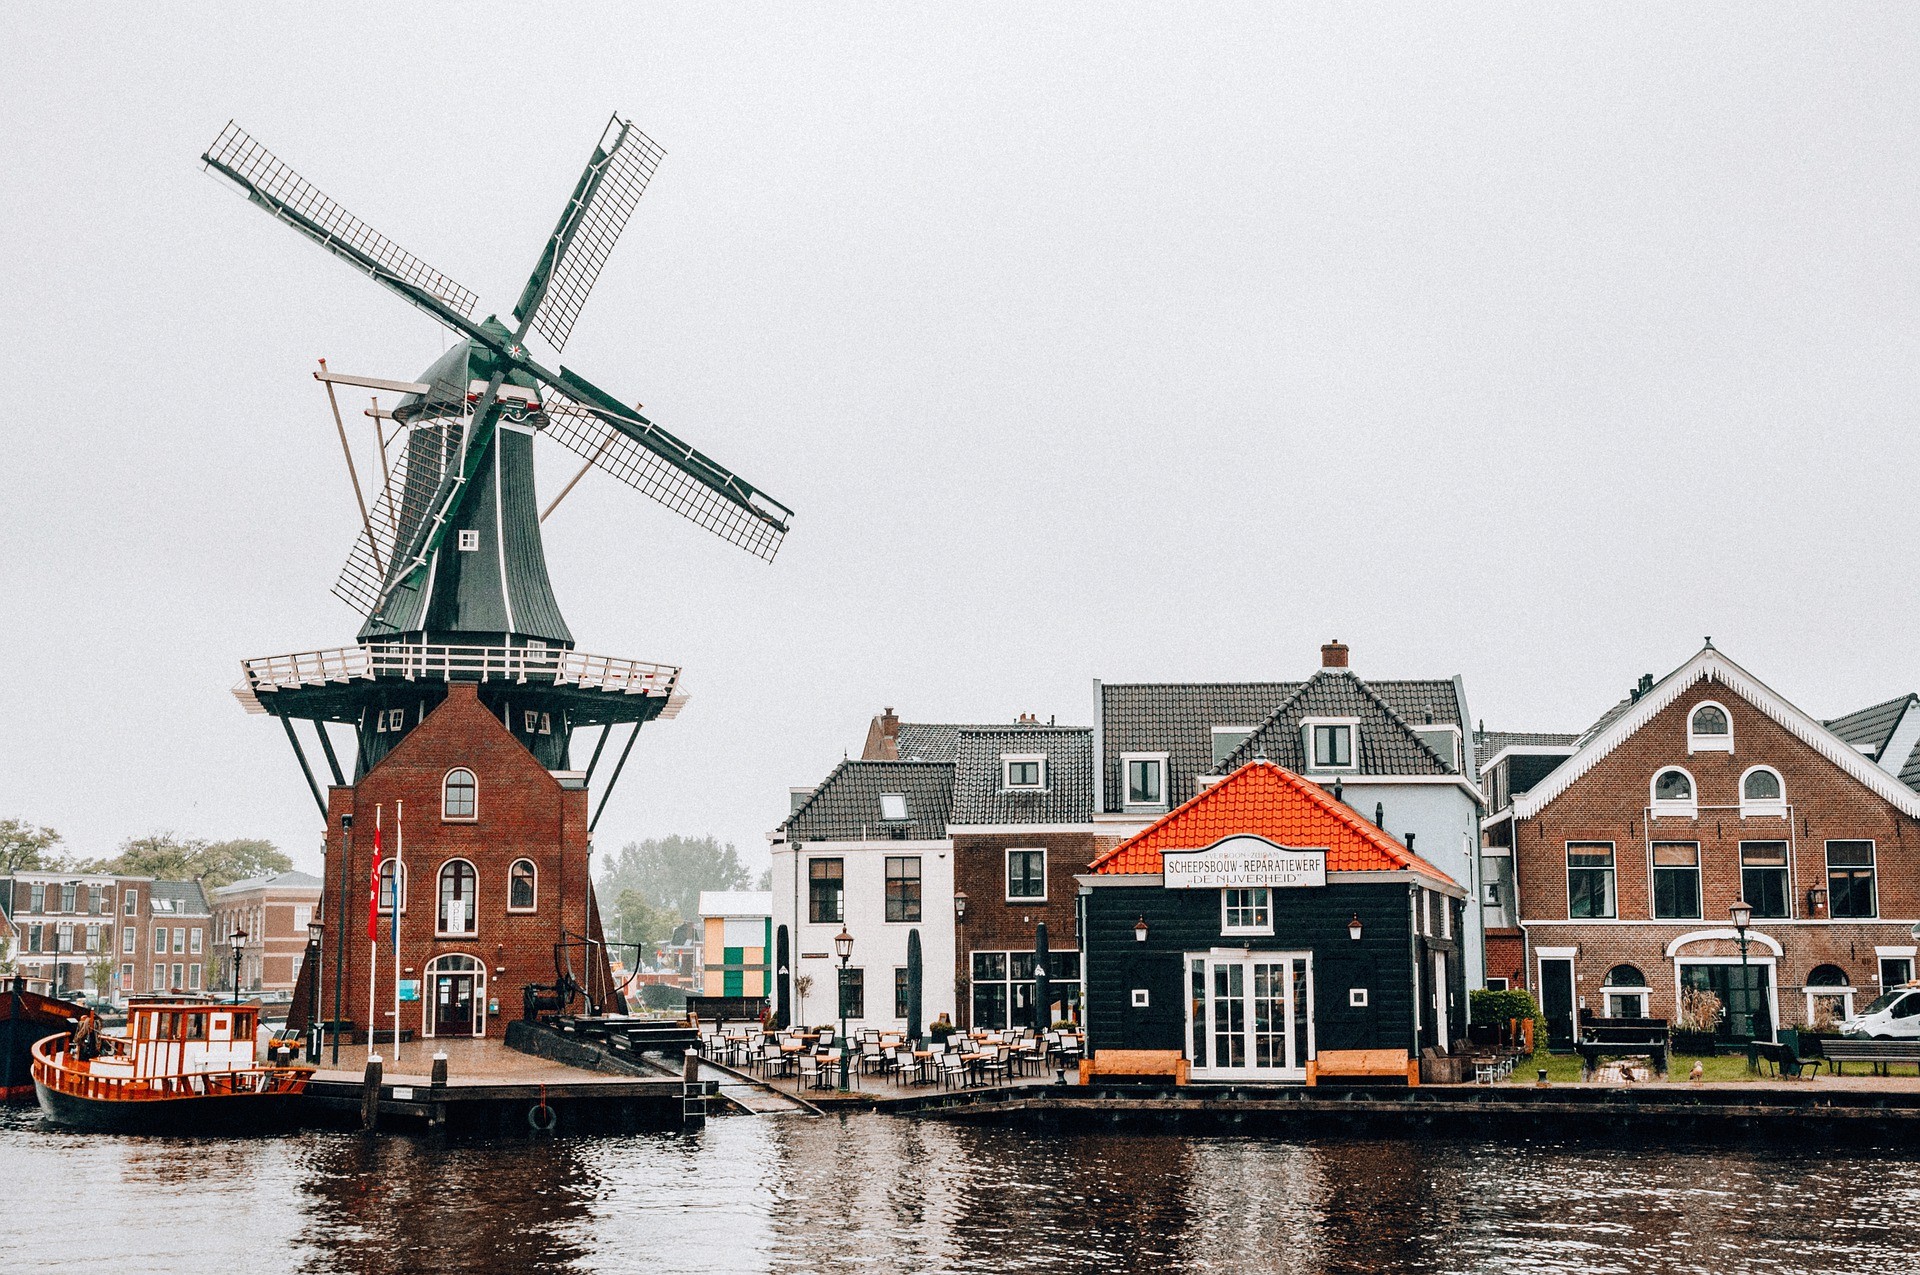 Mudarse a Países Bajos como expatriados puede ser un acierto